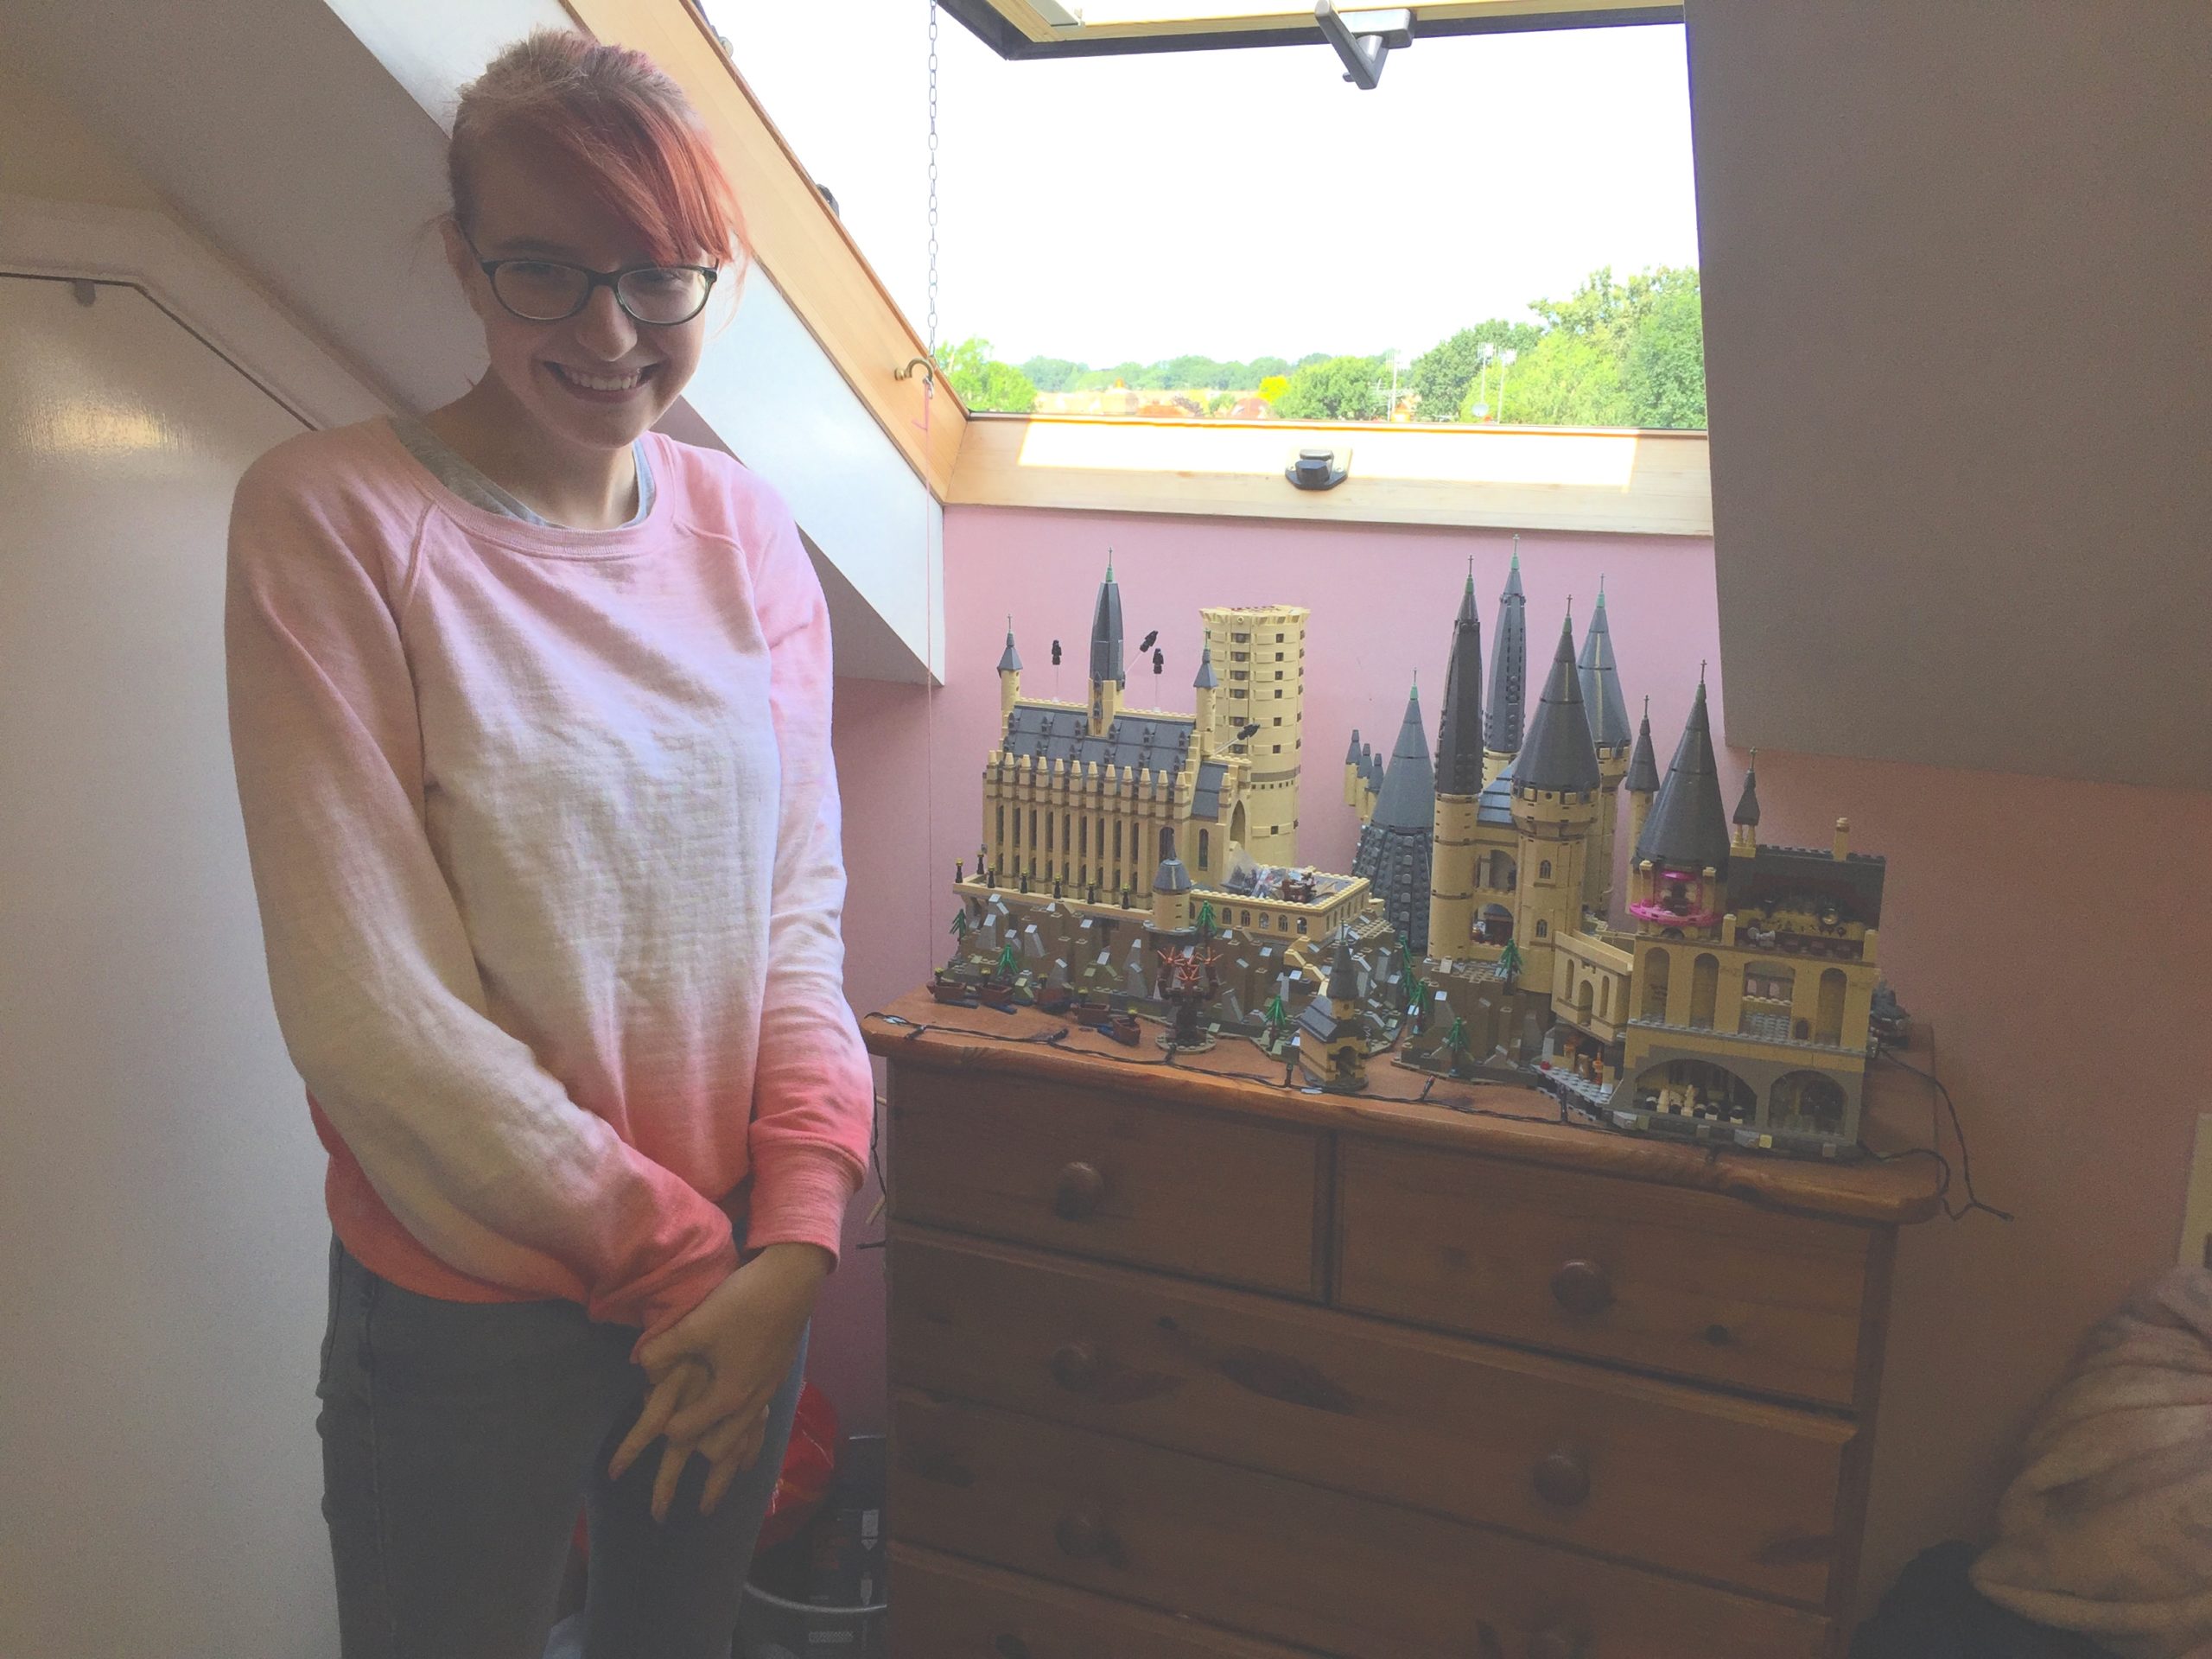 Jenny next to her Harry Potter lego model